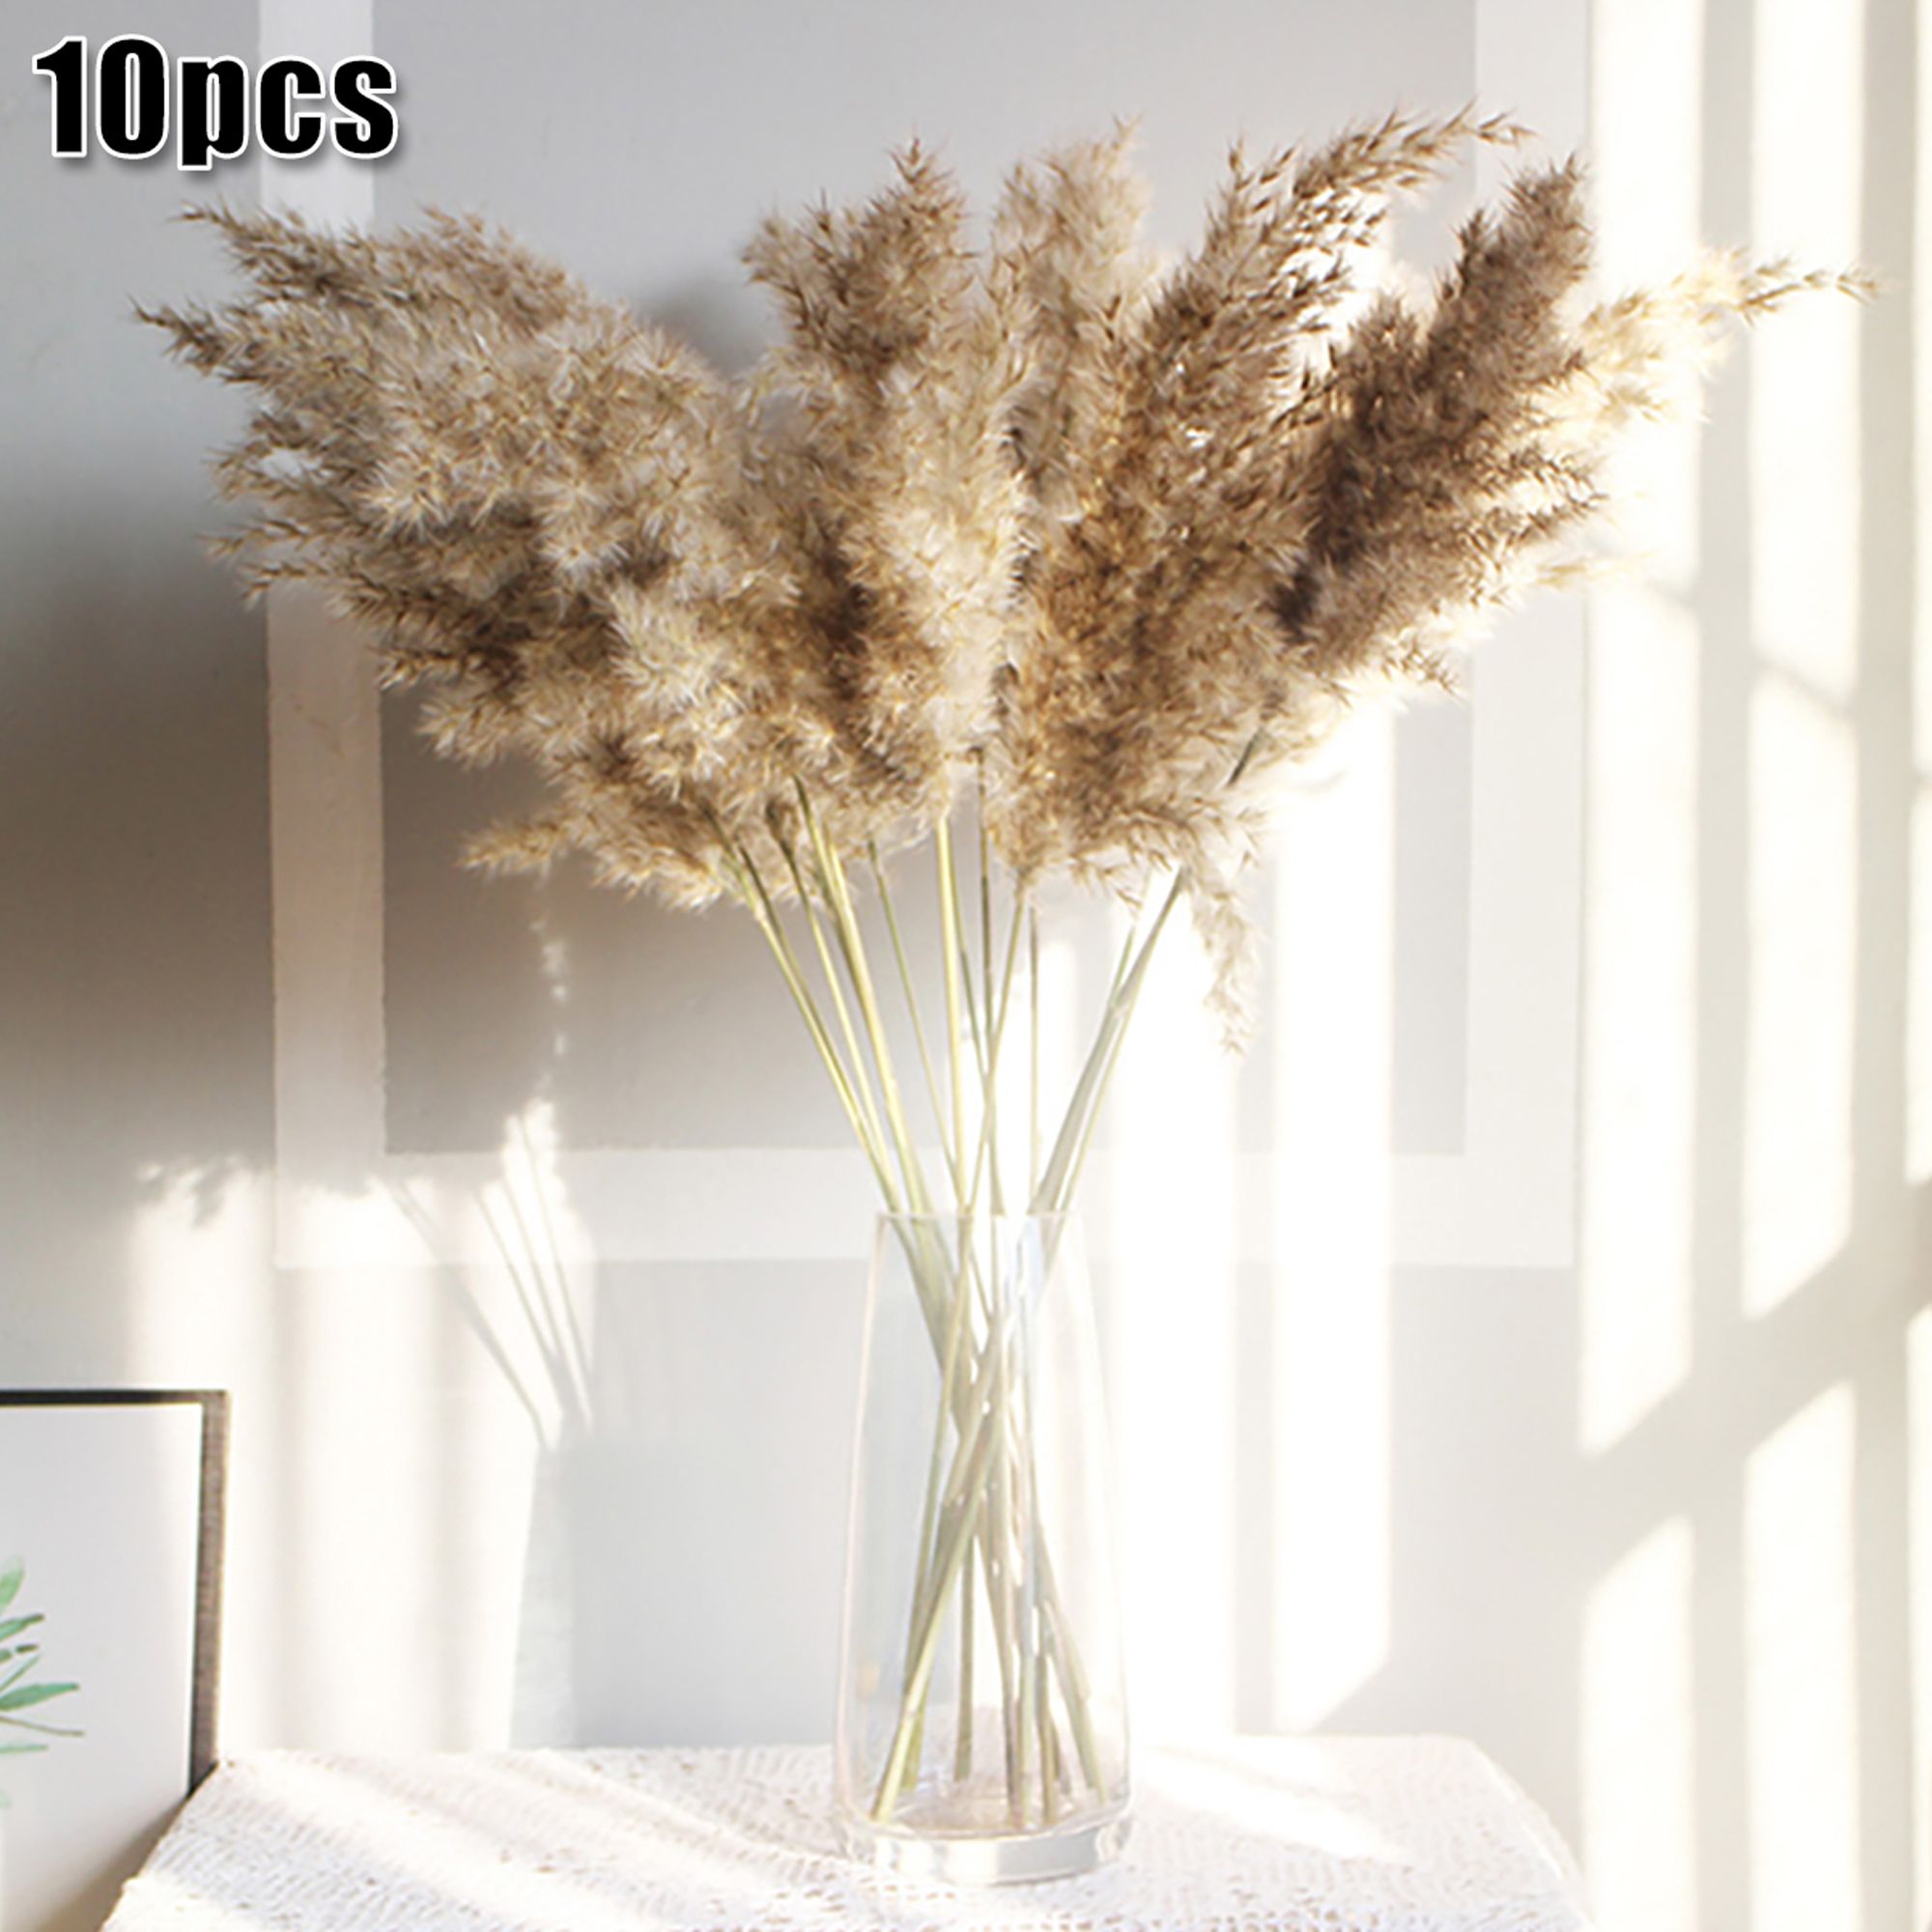 10 Pcs Natural Dried Pampas Grass Reed Flower Bunch Wedding Bouquet Decors | Walmart (US)